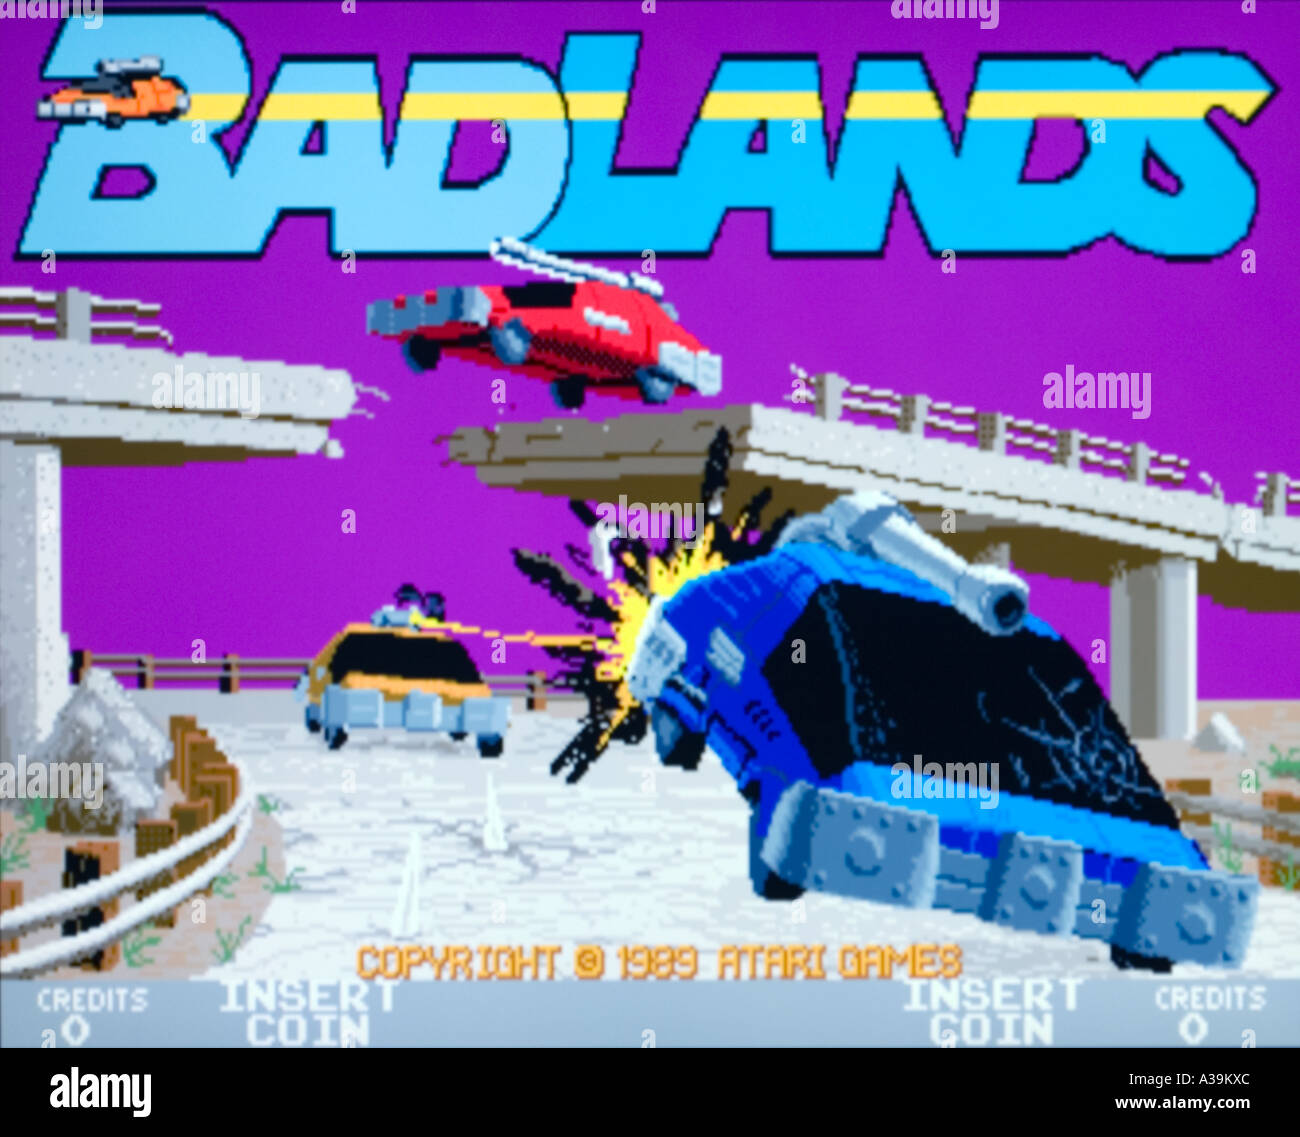 Badlands Atari 1989 vintage videogioco arcade screenshot - solo uso editoriale Foto Stock